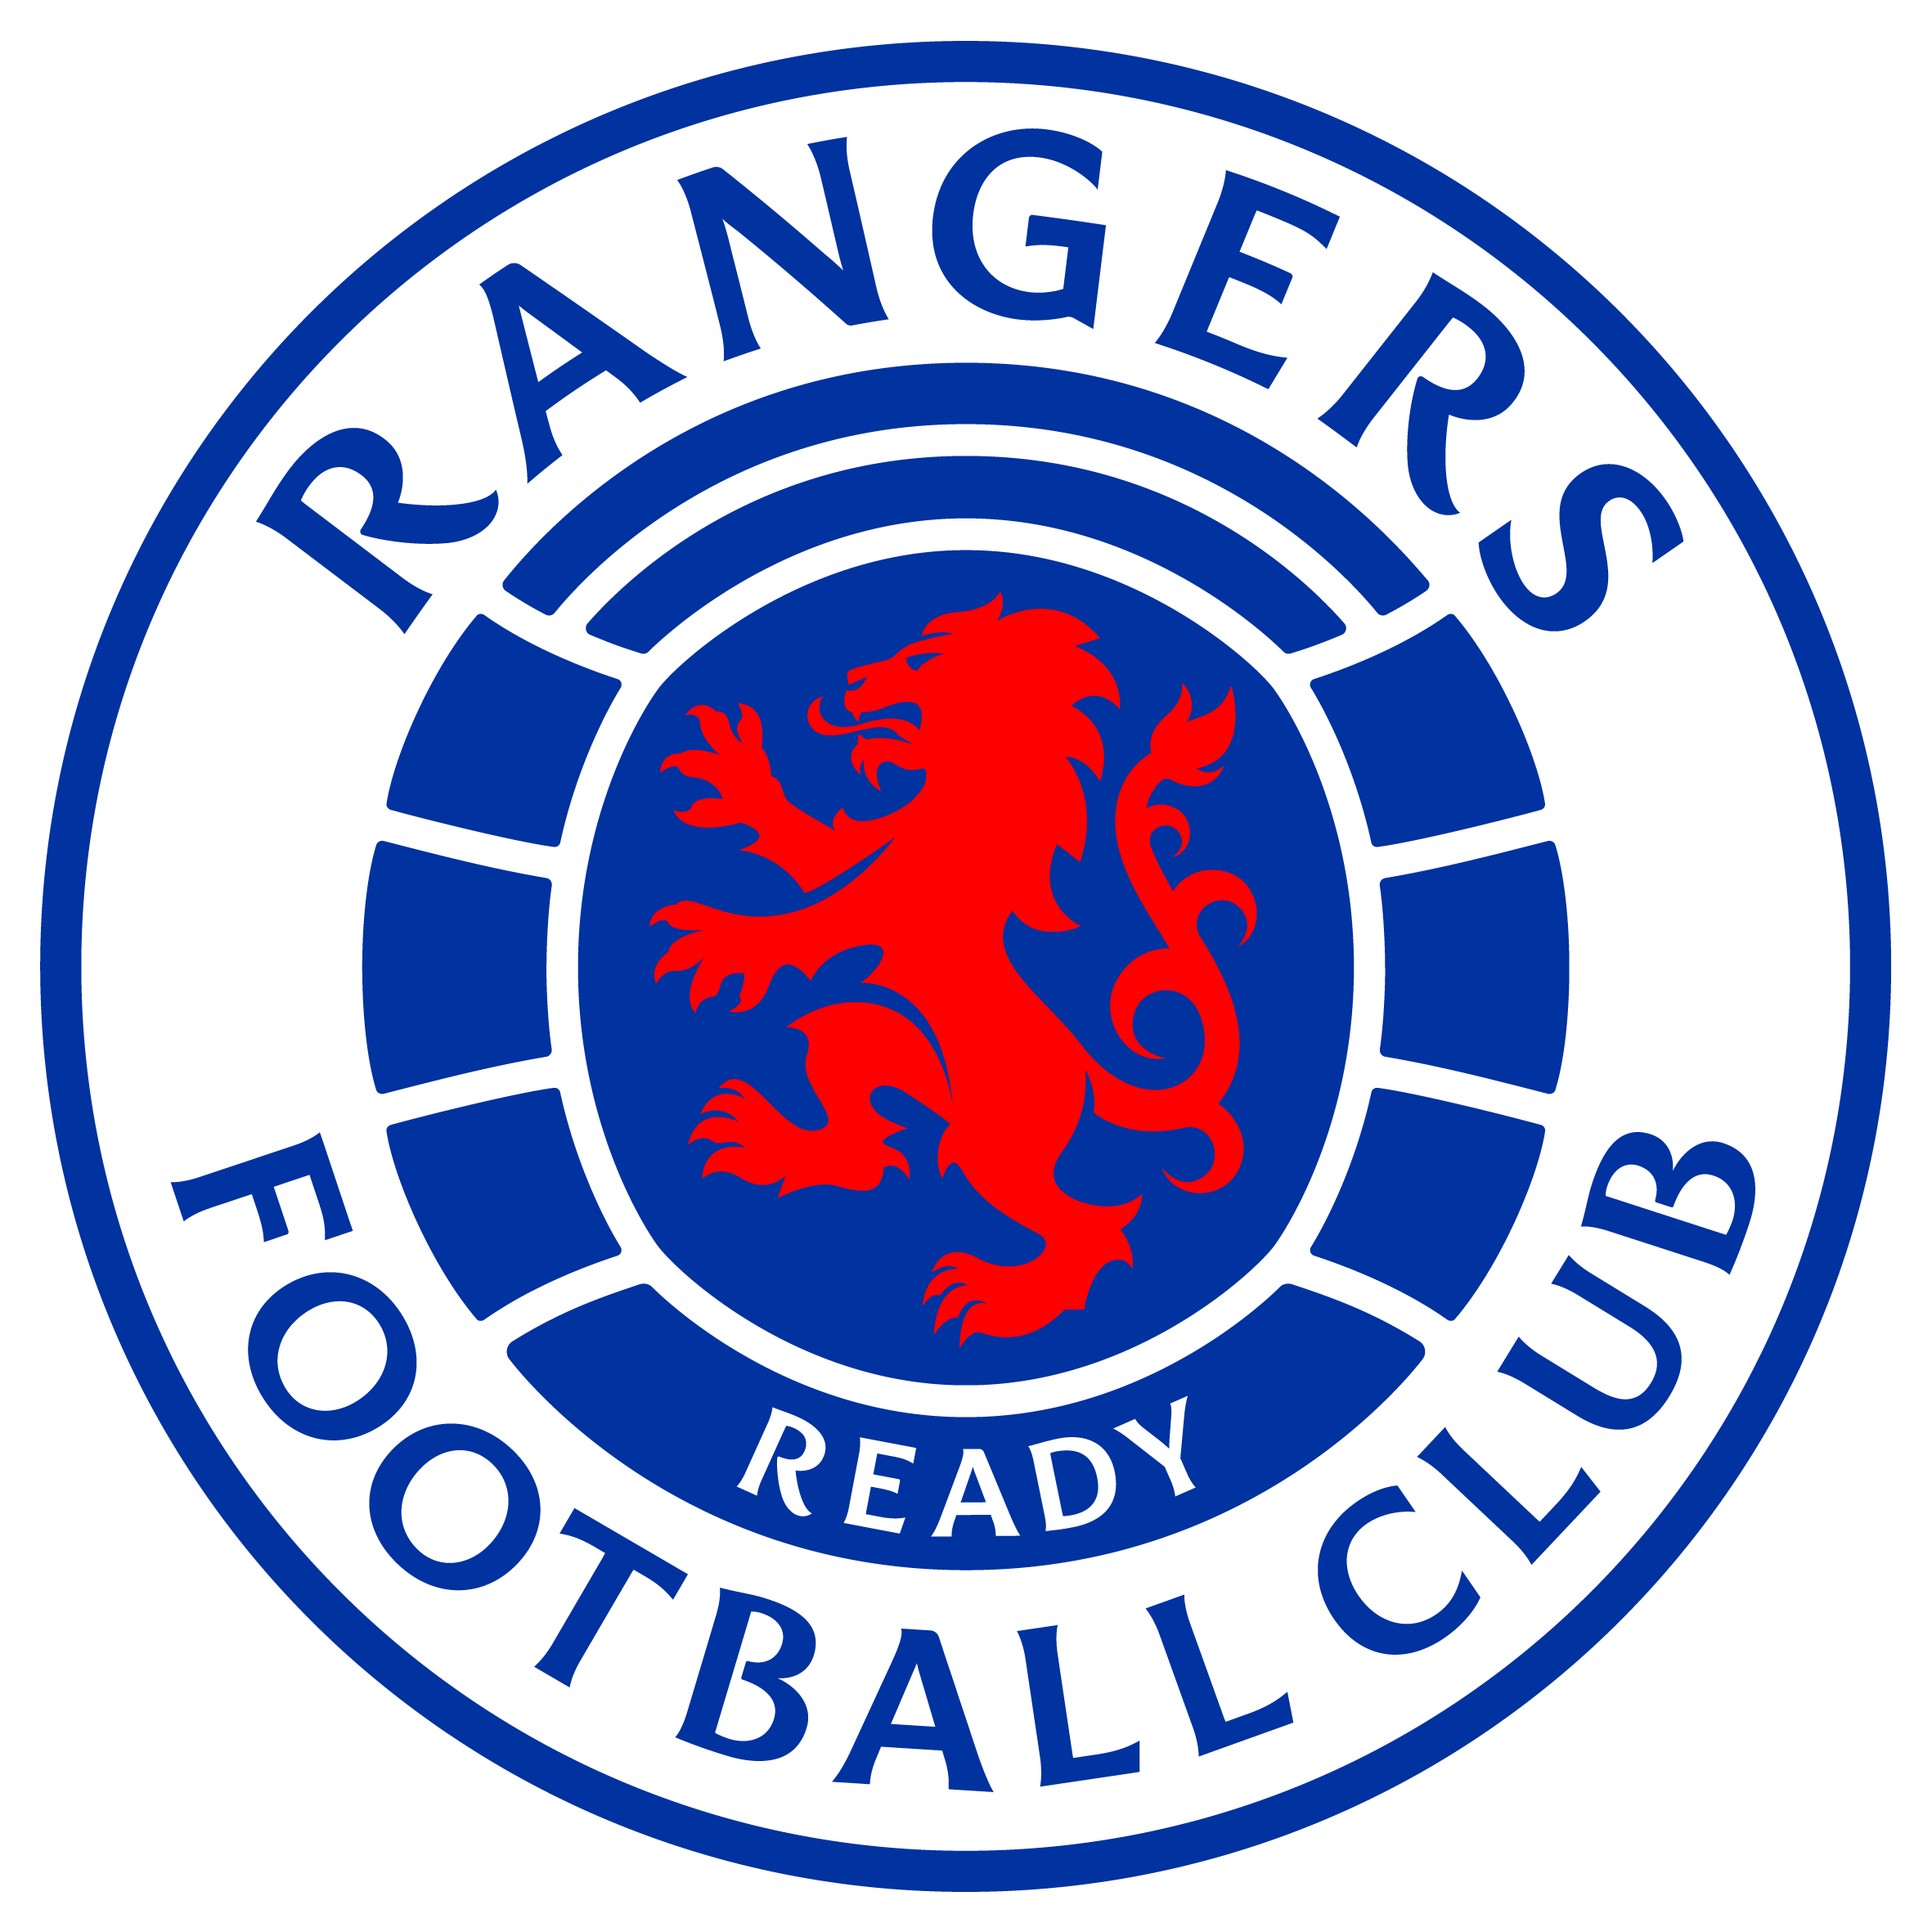 Rangers FC v Heart of Midlothian FC 